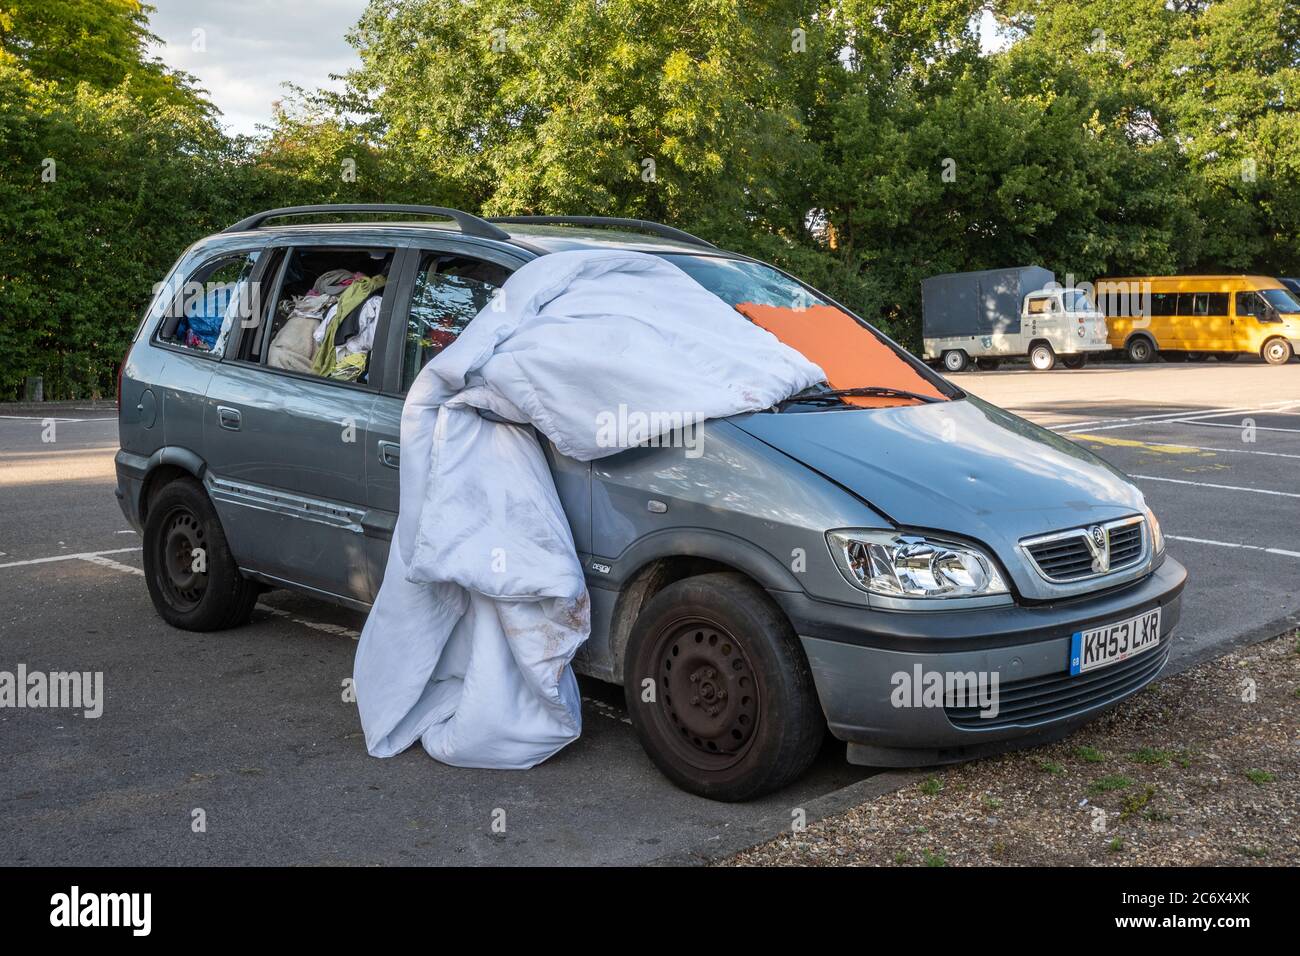 Un'auto abitata da una persona senza casa, piena di vestiti e oggetti personali, con il parabrezza anteriore coperto, Regno Unito Foto Stock